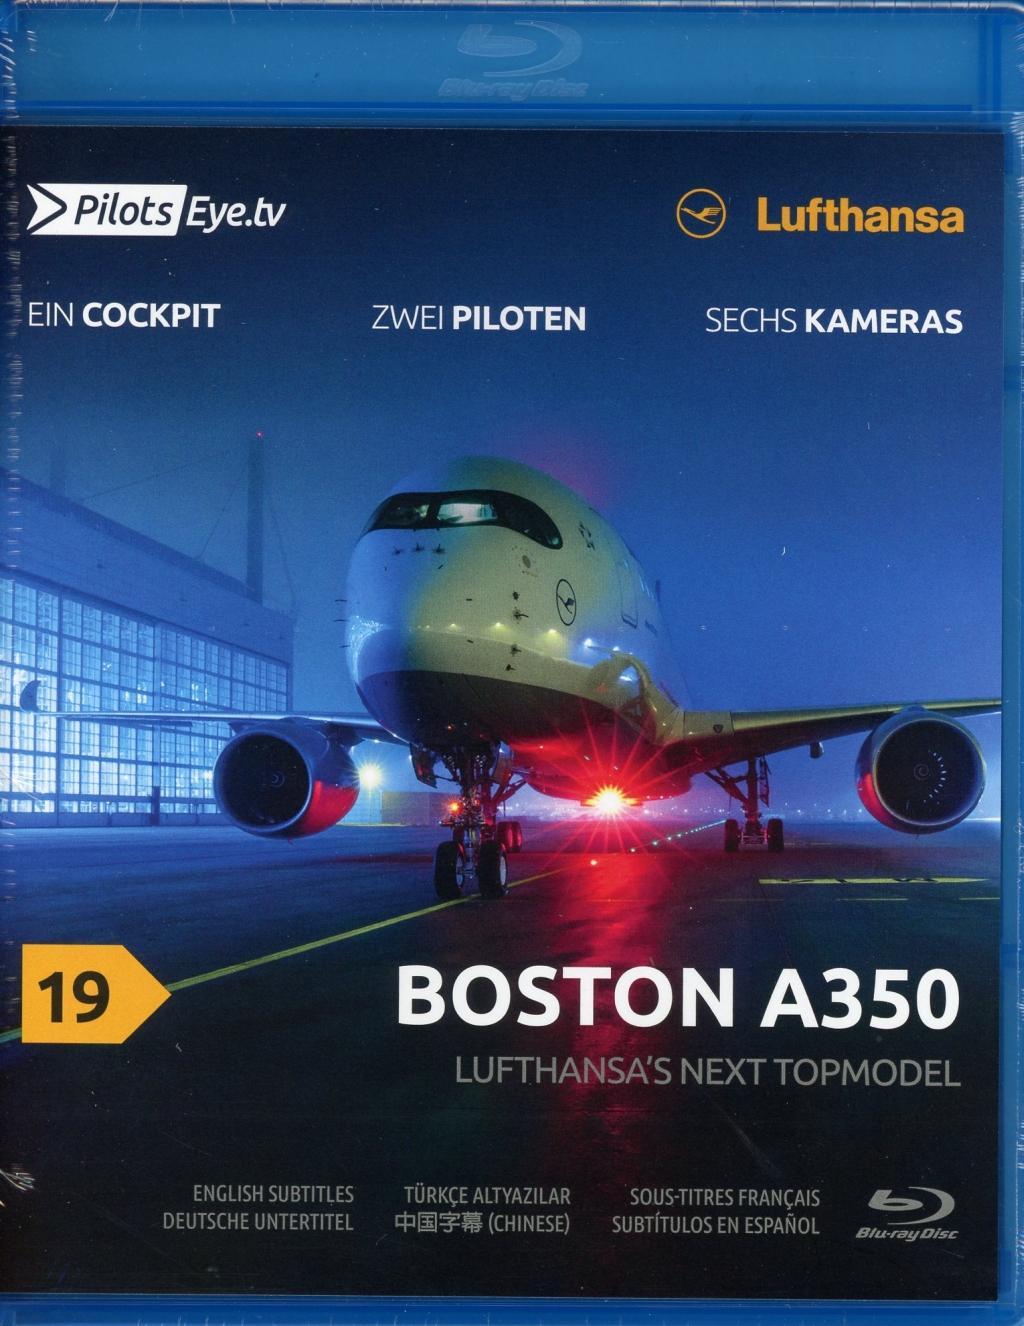 Videoclip PilotsEYE.tv | BOSTON | A350 Thomas Aigner